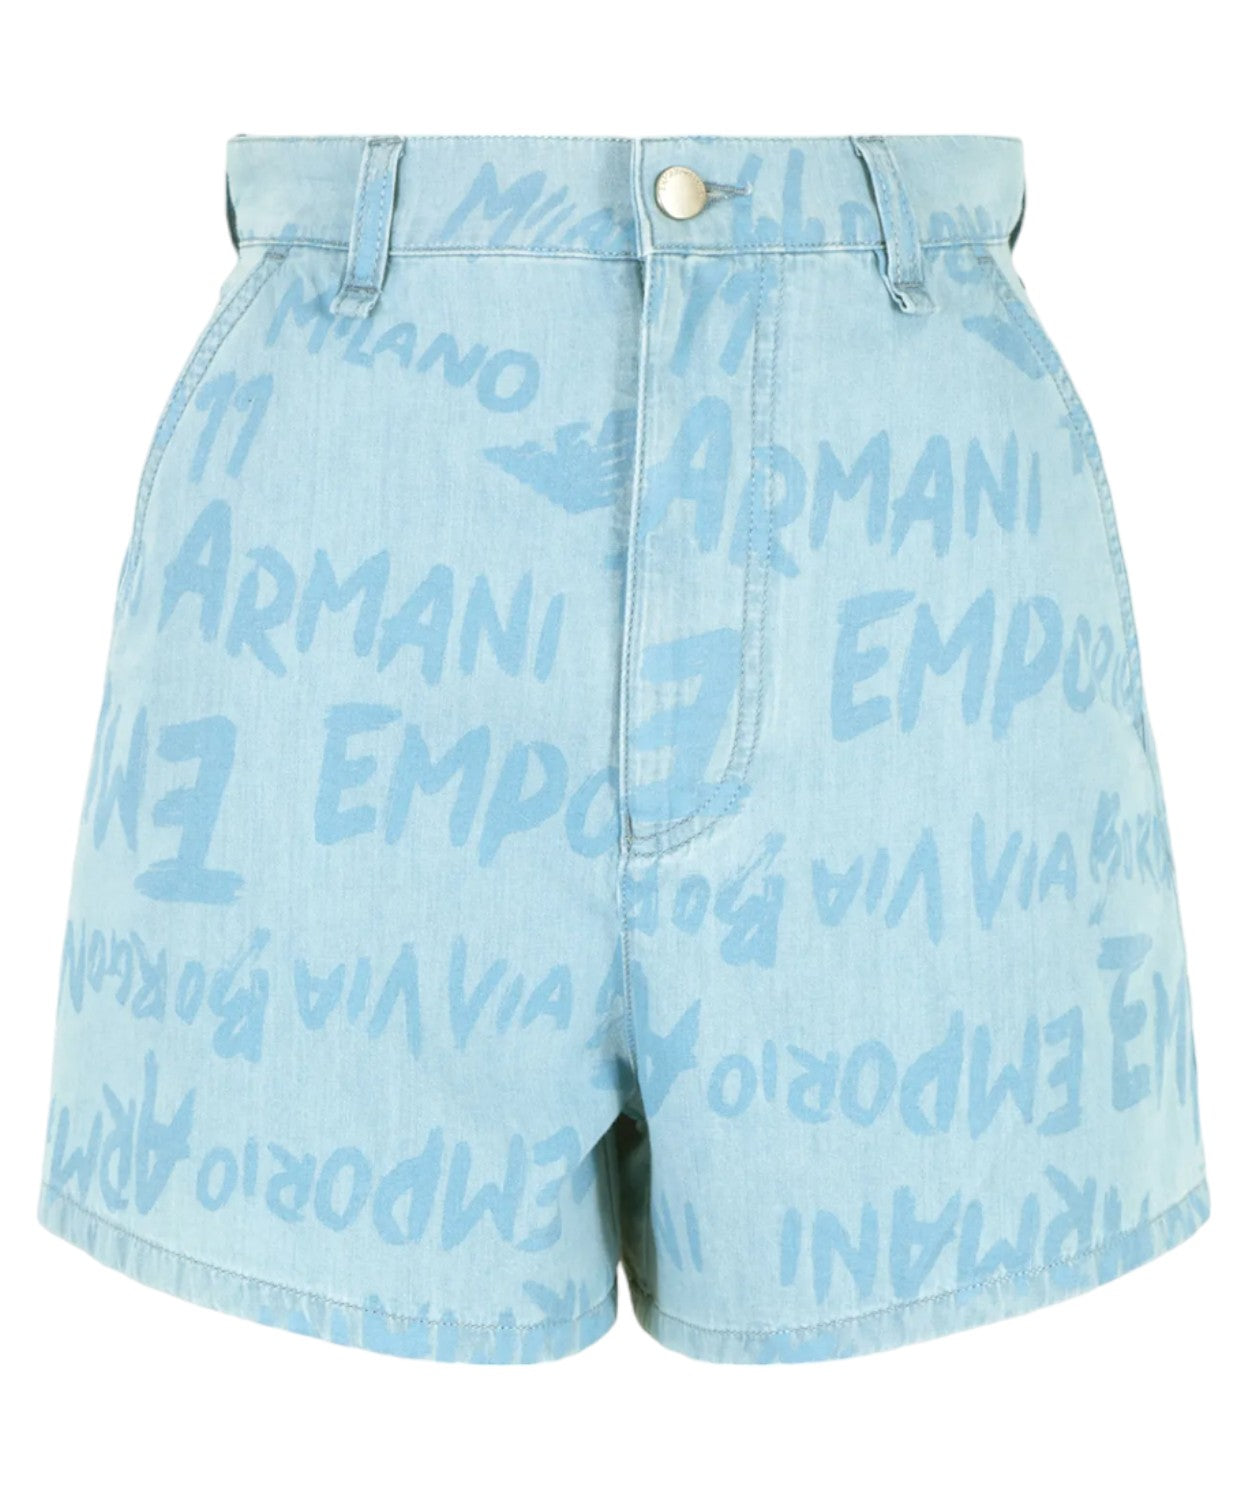 Shorts in Denim Light con Stampa Lettering-Emporio Armani-Shorts-Vittorio Citro Boutique